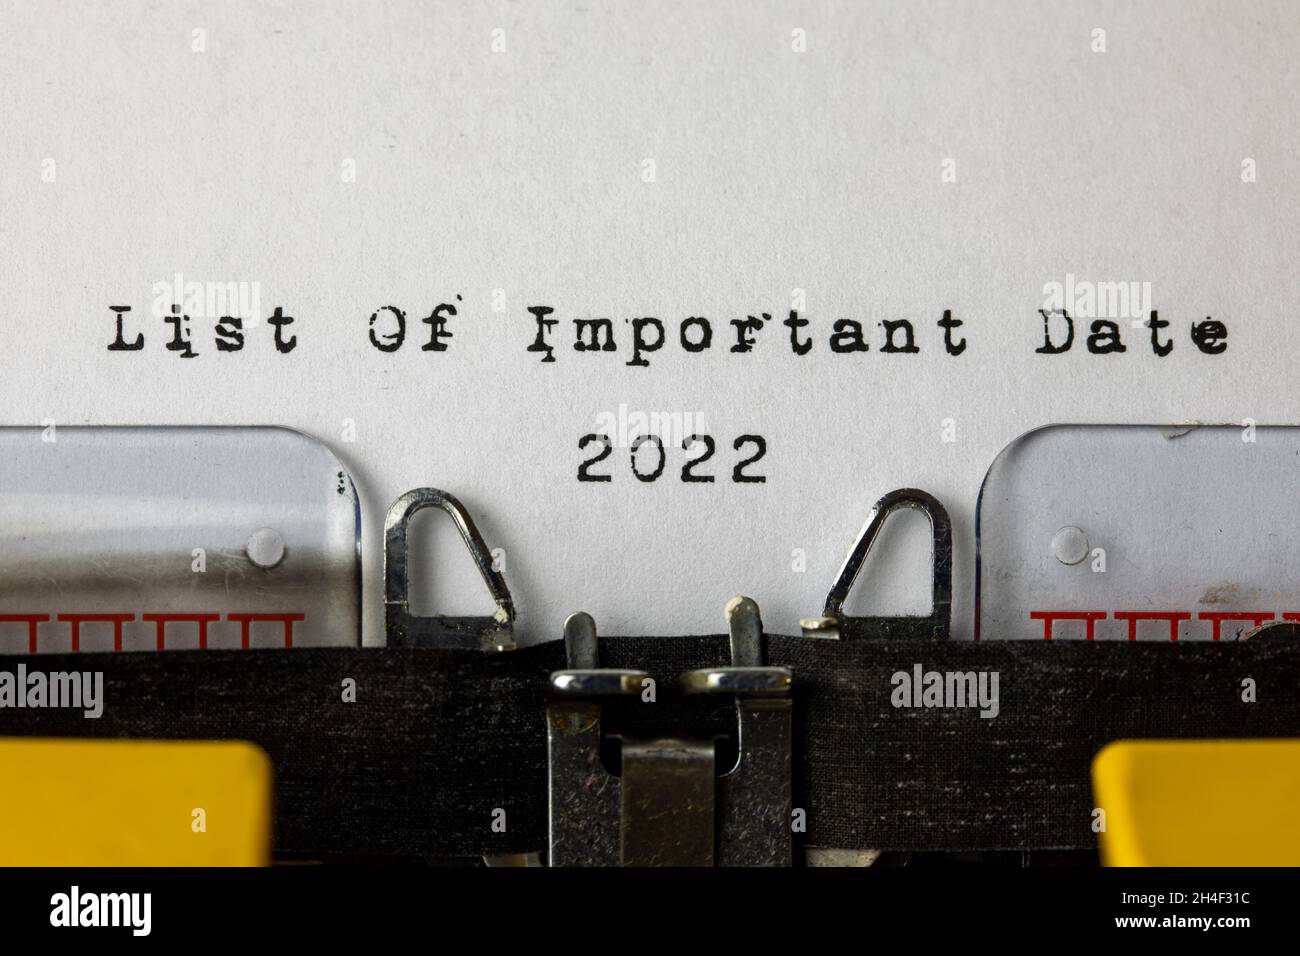 Elenco dei giorni importanti 2022 scritto su una vecchia macchina da scrivere Foto Stock